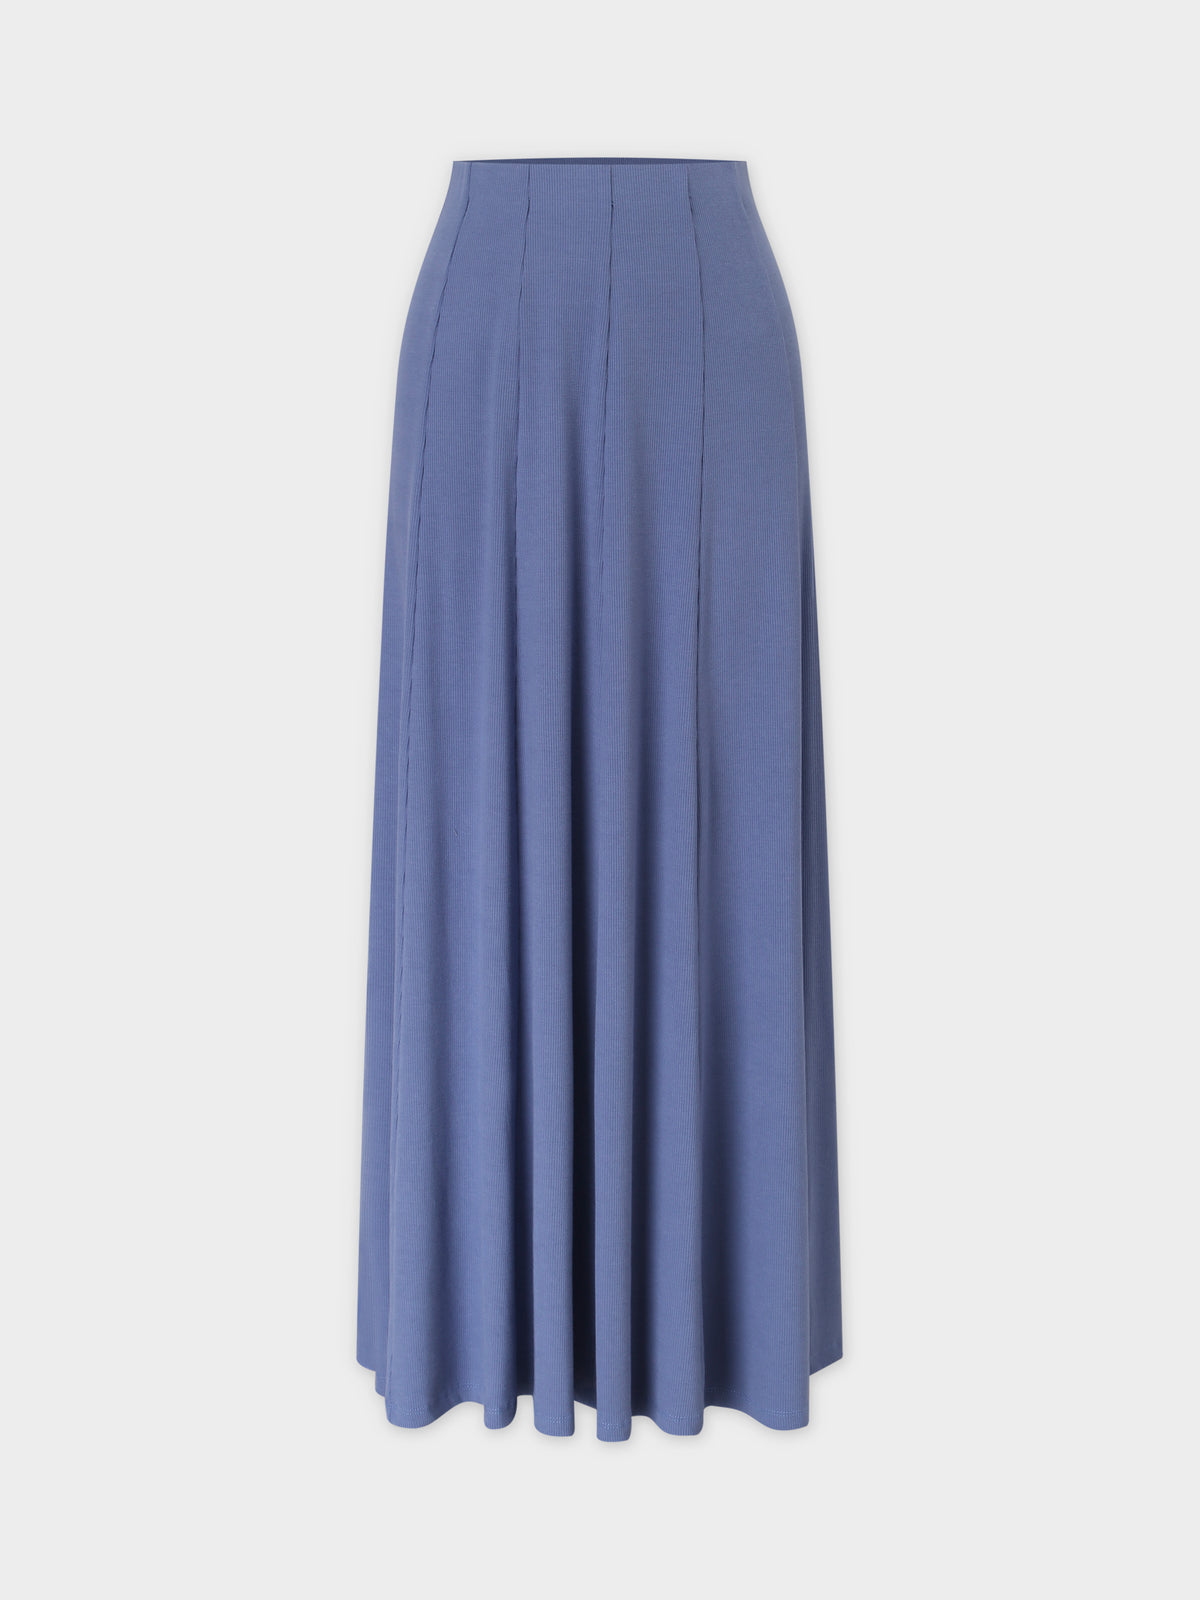 Panel Ribbed Skirt-Denim Blue